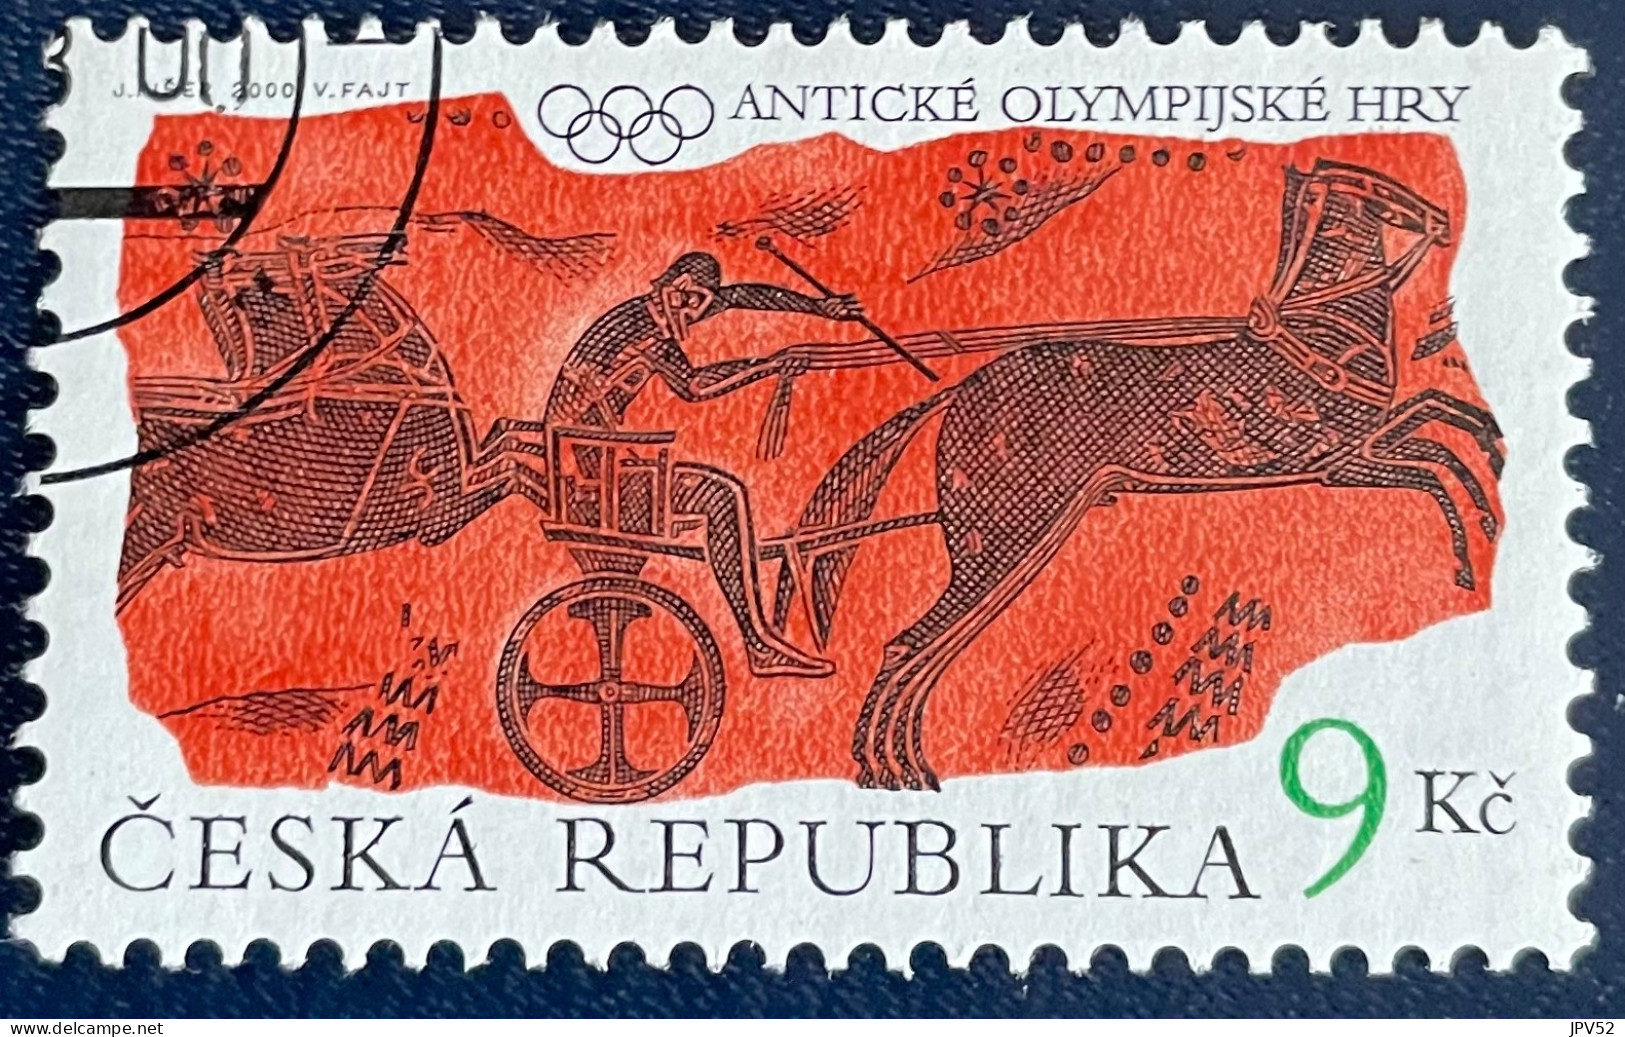 Ceska Republika - Tsjechië - C4/6 - 2000 - (°)used - Michel 268 - Oude Olympische Spelen - Gebruikt